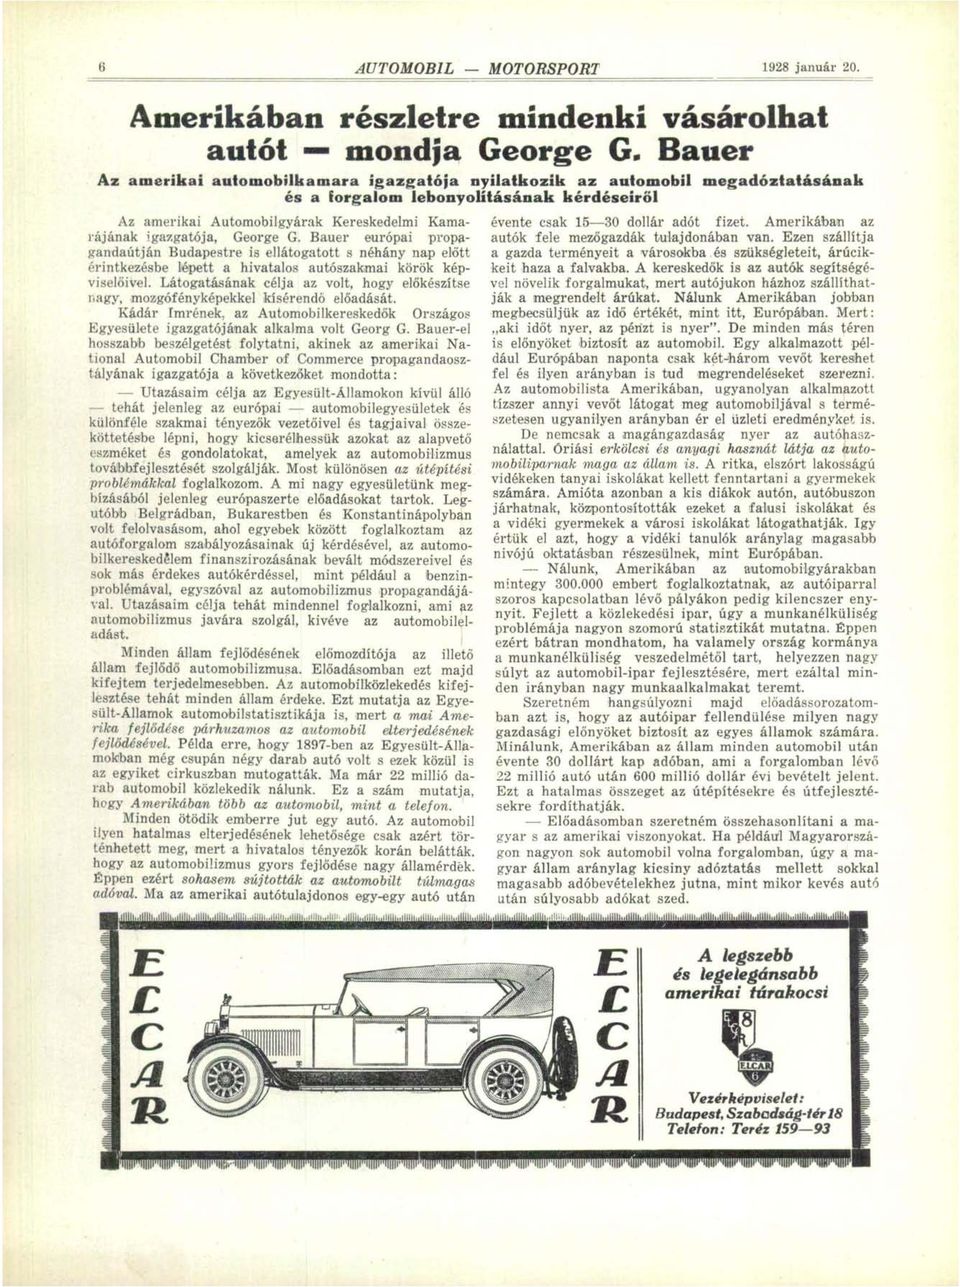 Bauer európai propagandaútján Budapestre is ellátogatott s néhány nap előtt érintkezésbe lépett a hivatalos autószakmai körök képviselőivel.